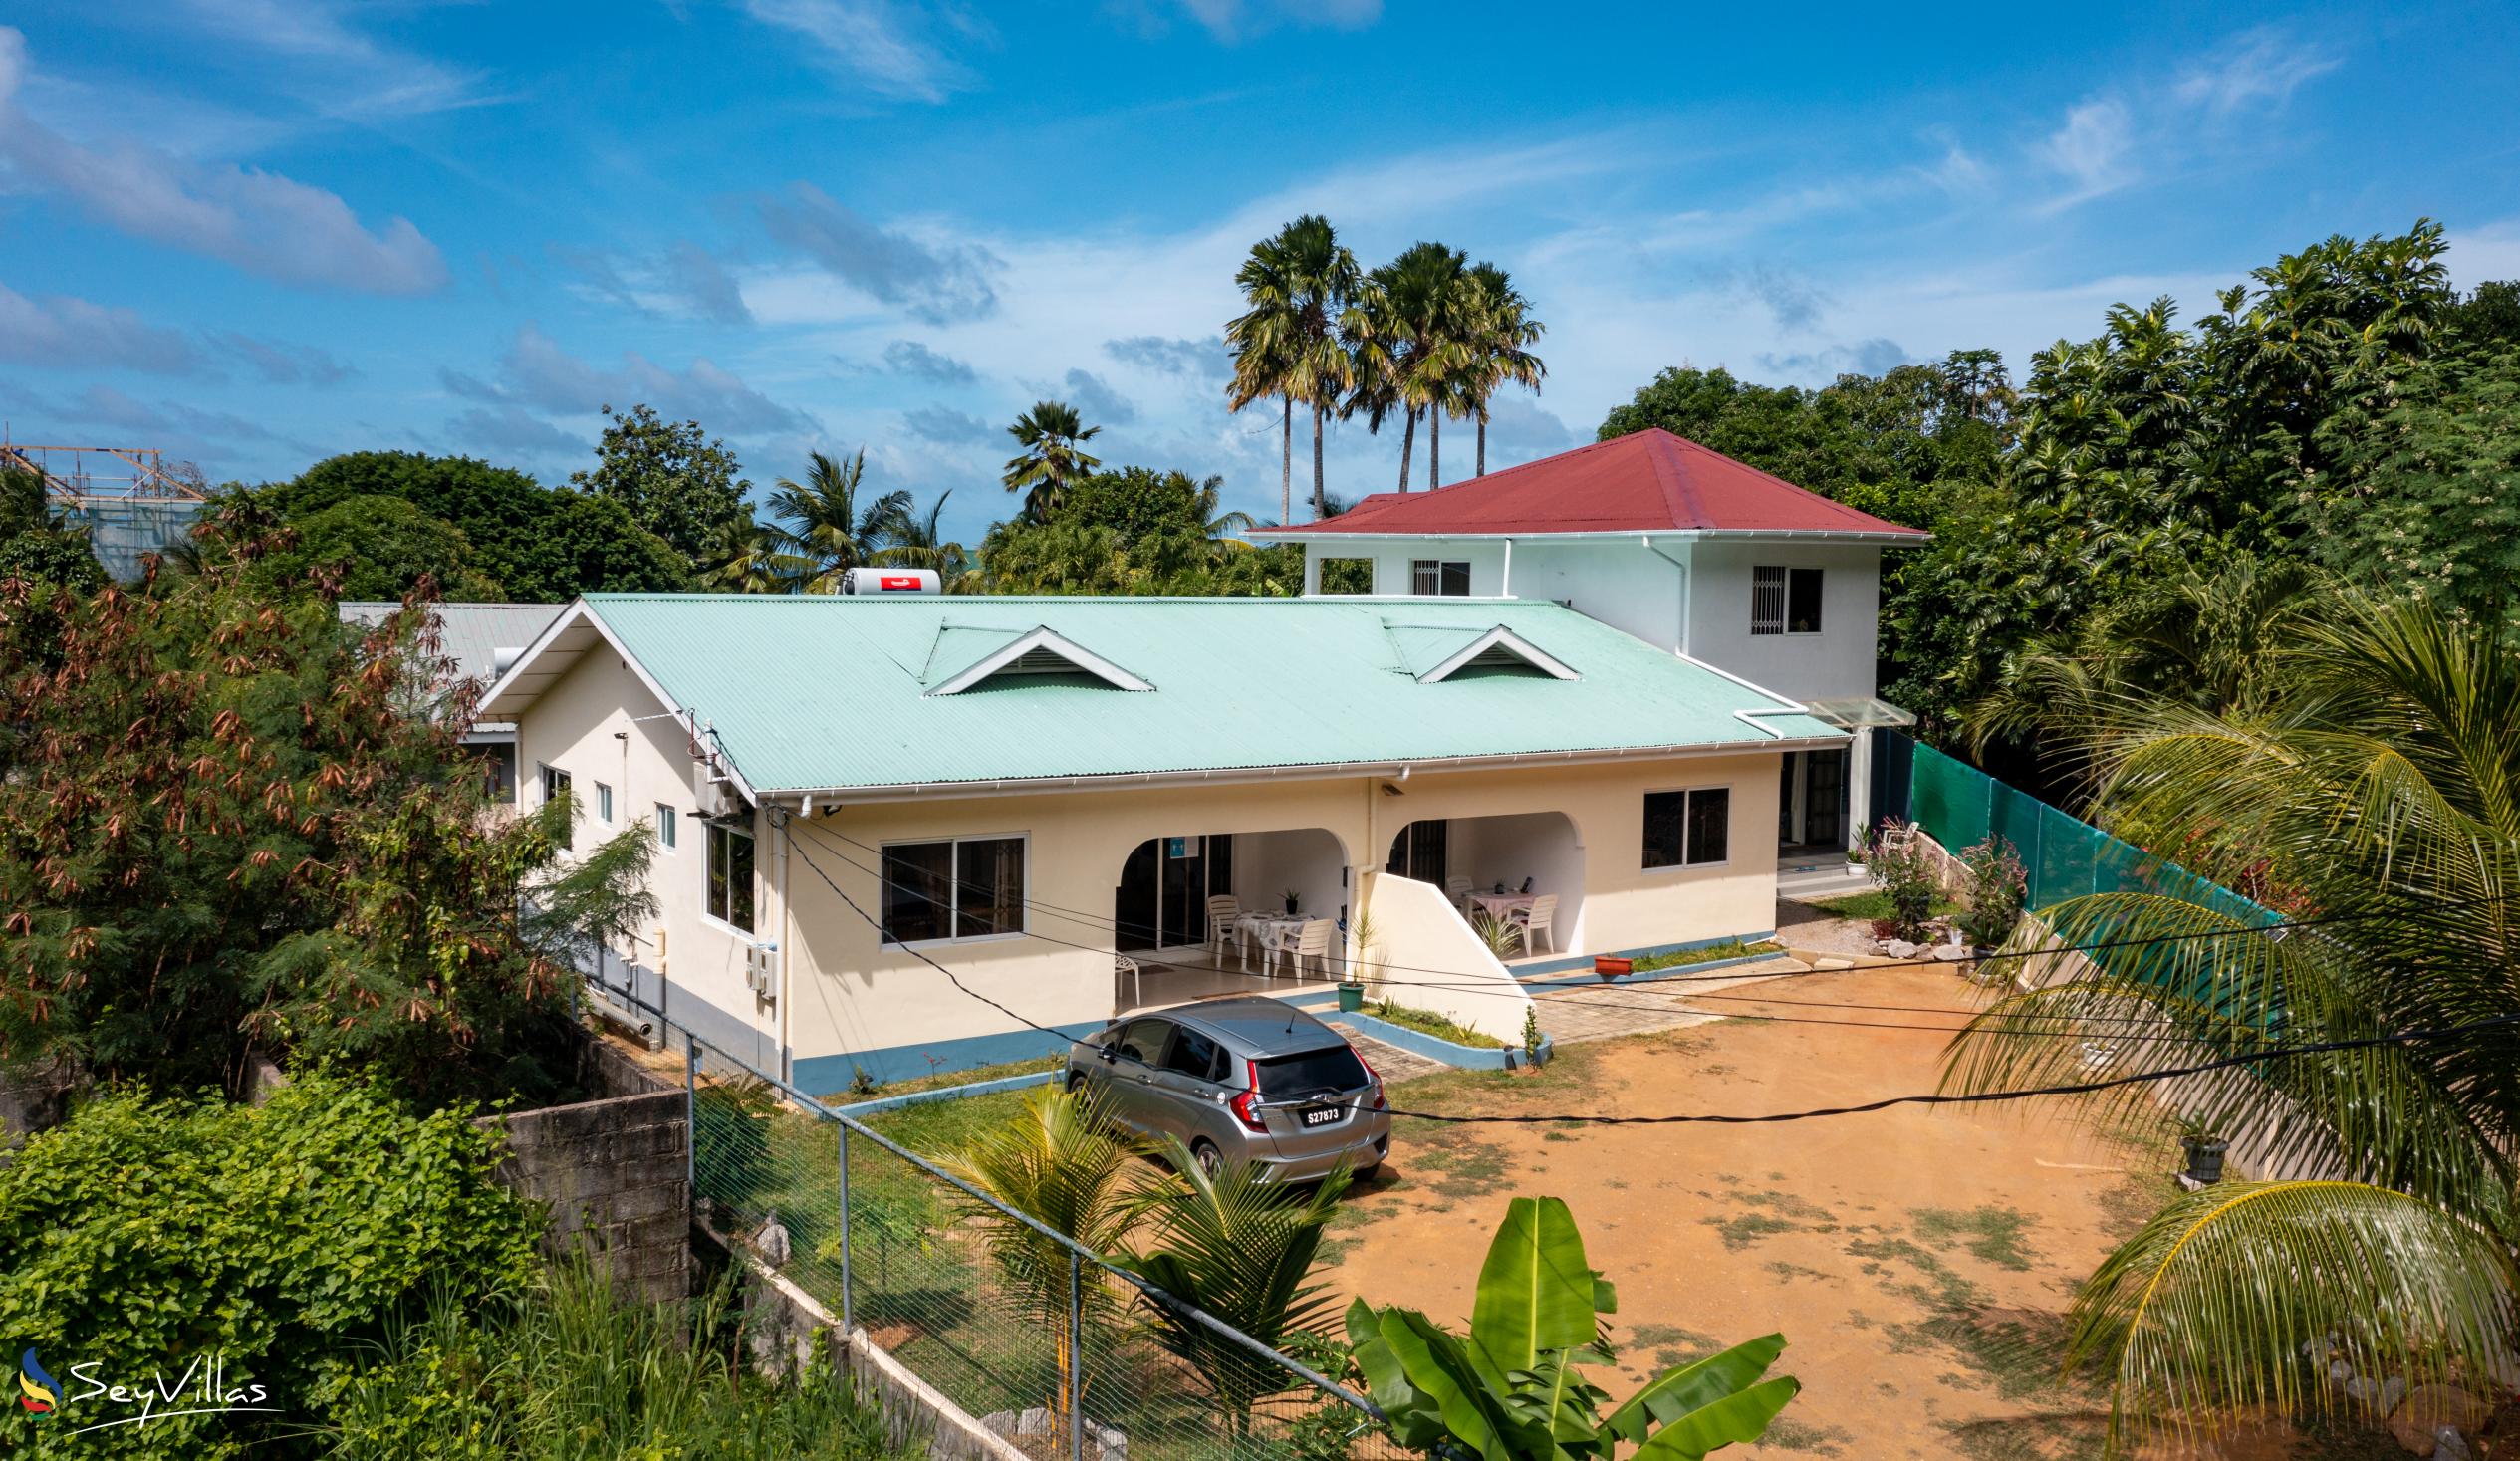 Photo 2: Farida Apartments - Outdoor area - Mahé (Seychelles)